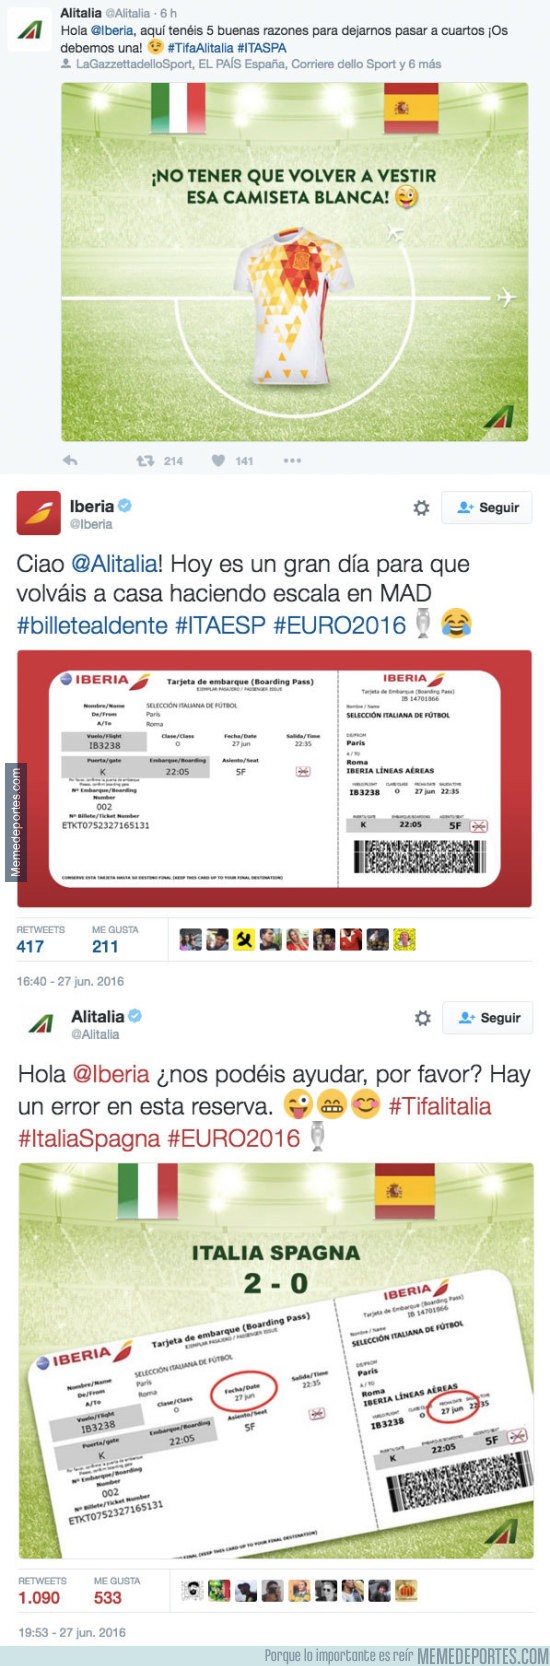 882675 - Así han terminado los zascas entre las aerolíneas Iberia y Alitalia en twitter